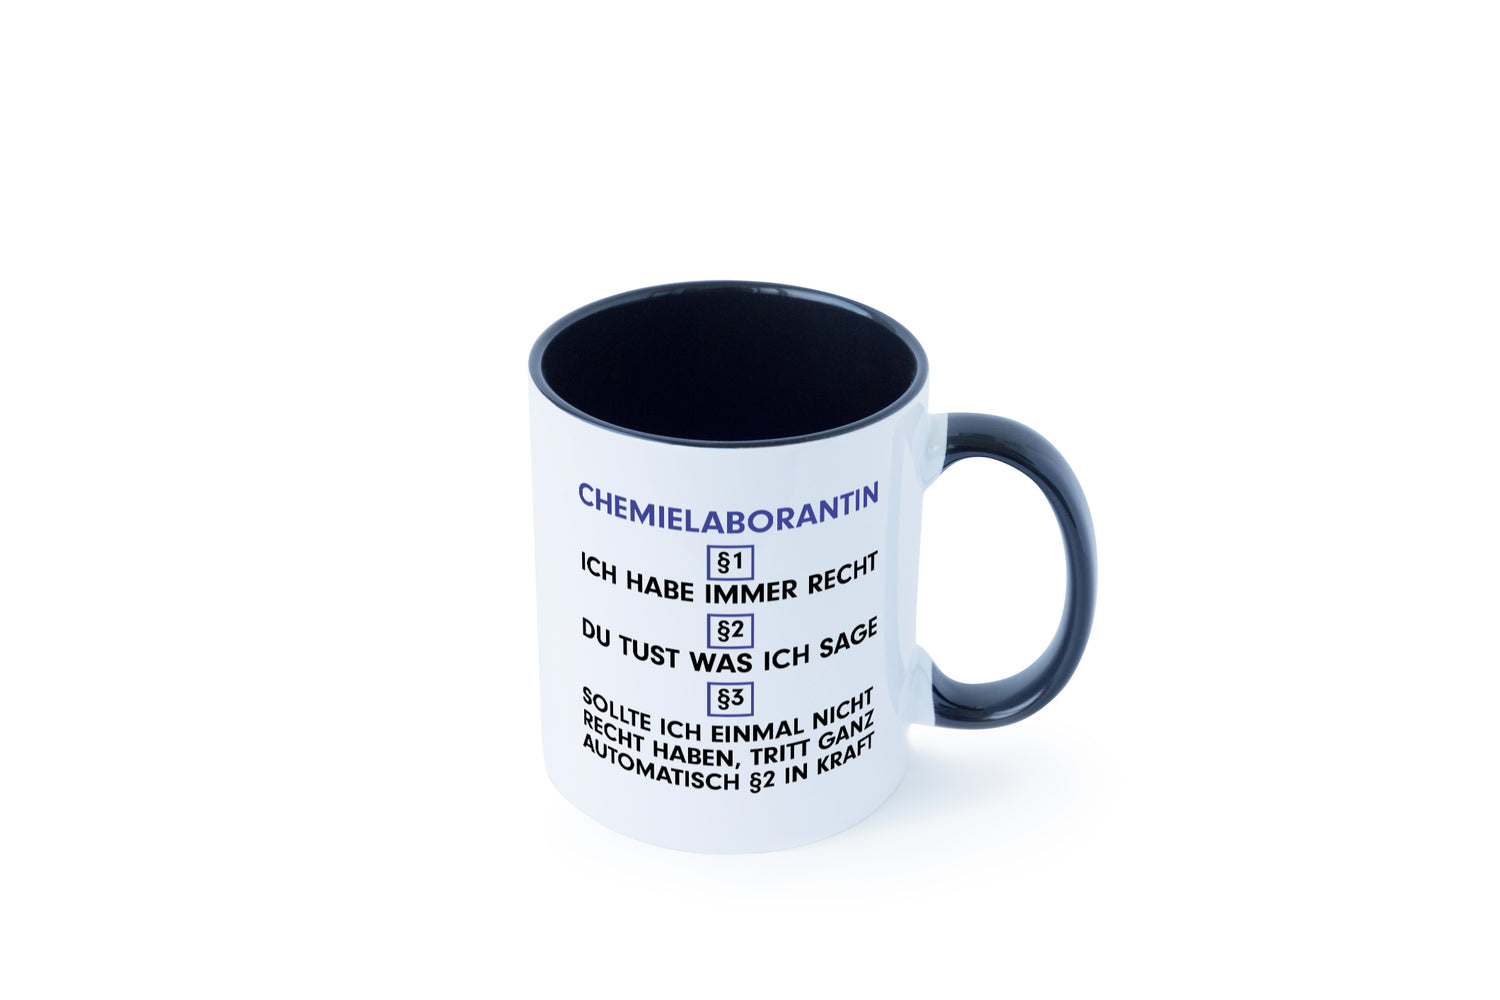 Ich habe immer Recht Chemielaborantin | Laborantin | Chemie Tasse Weiß - Schwarz - Kaffeetasse / Geschenk / Familie